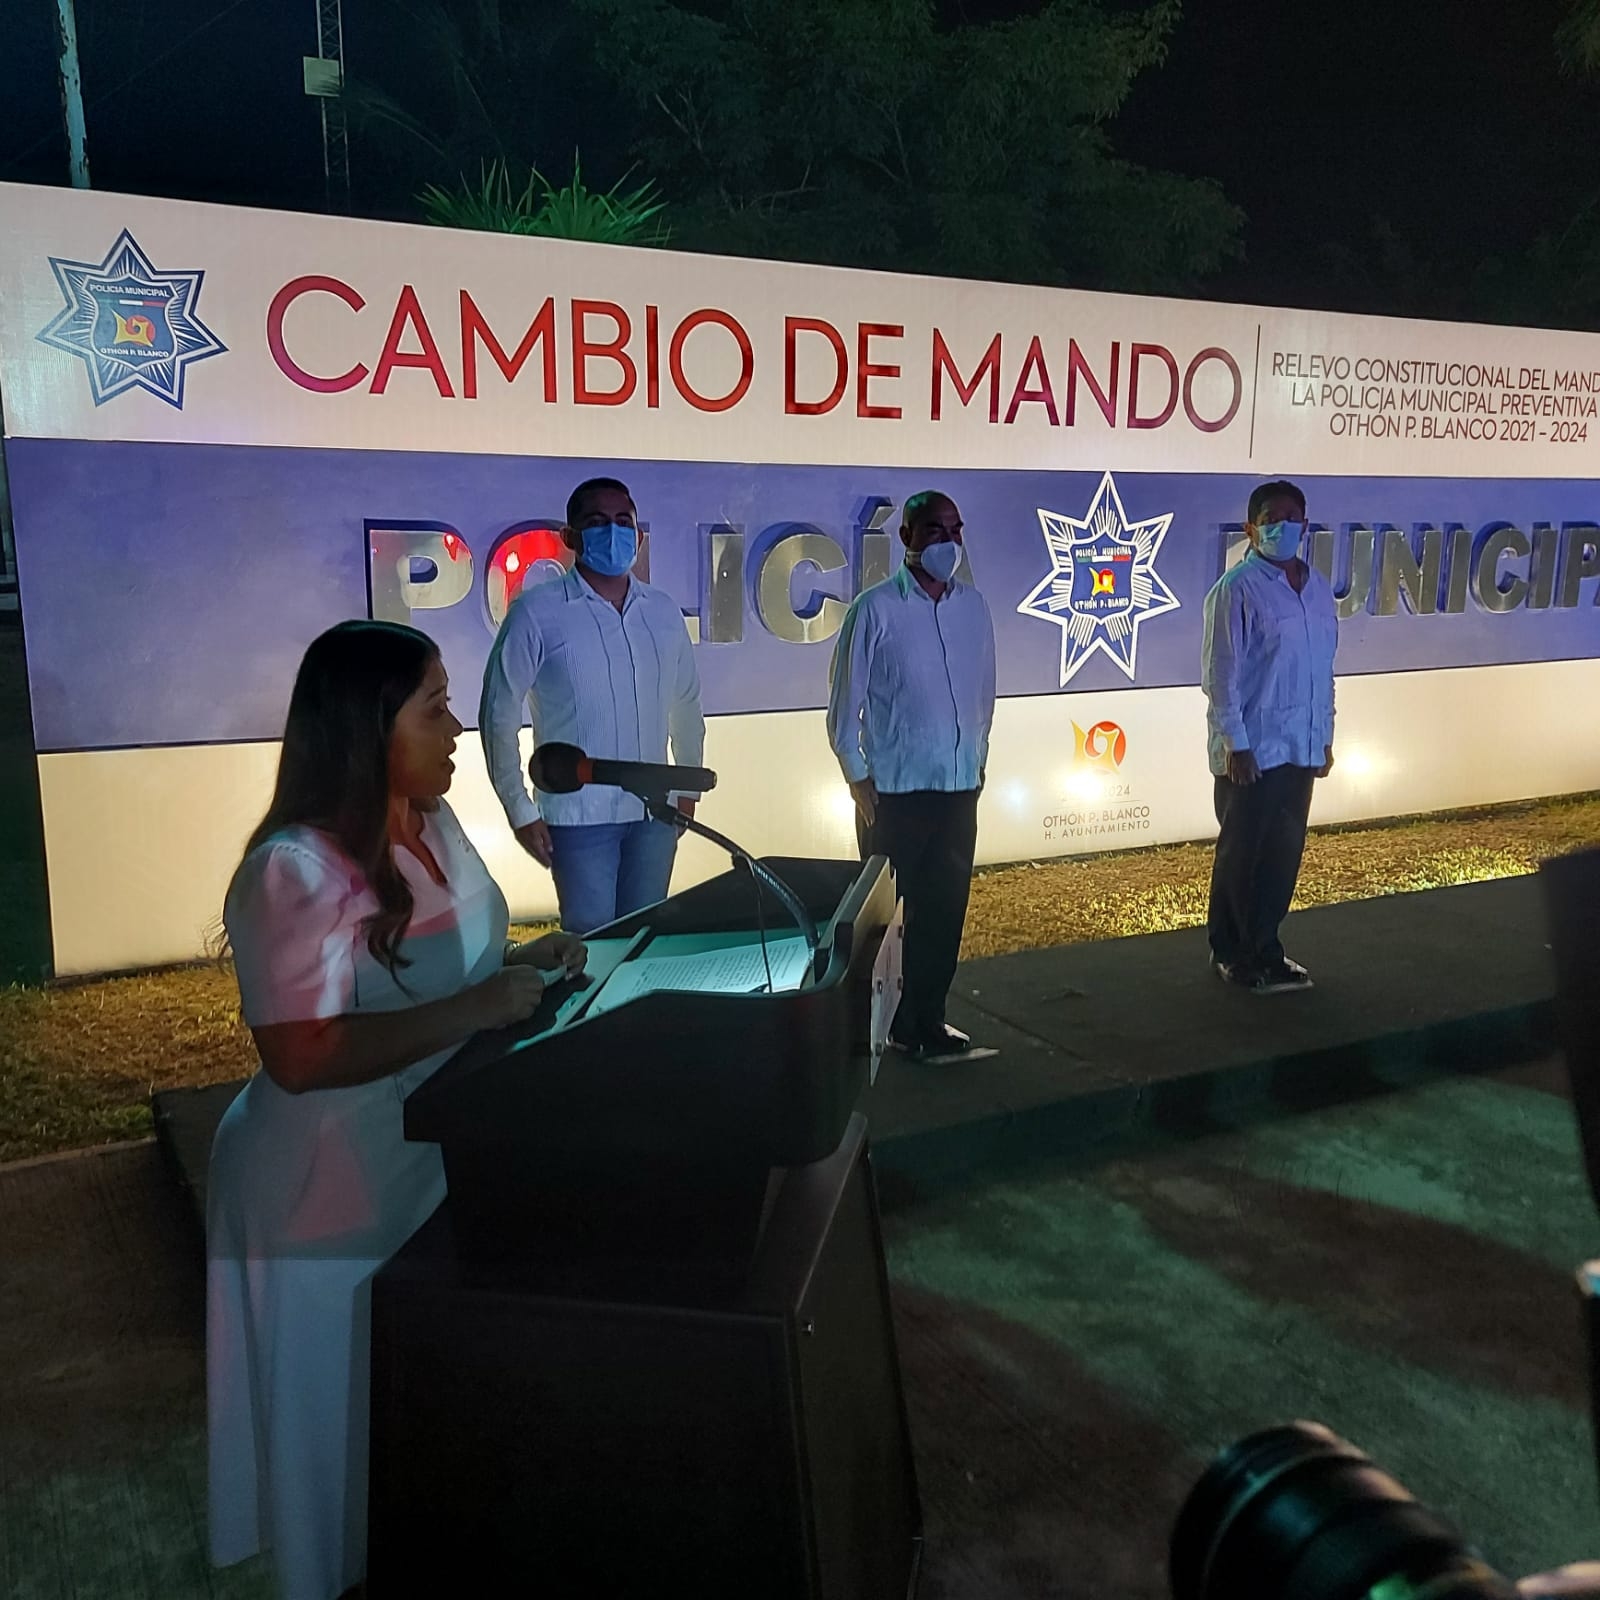 La Presidenta Municipal de Othón P. Blanco indicó que esperará la ratificación de René Rivera por parte del Cabildo